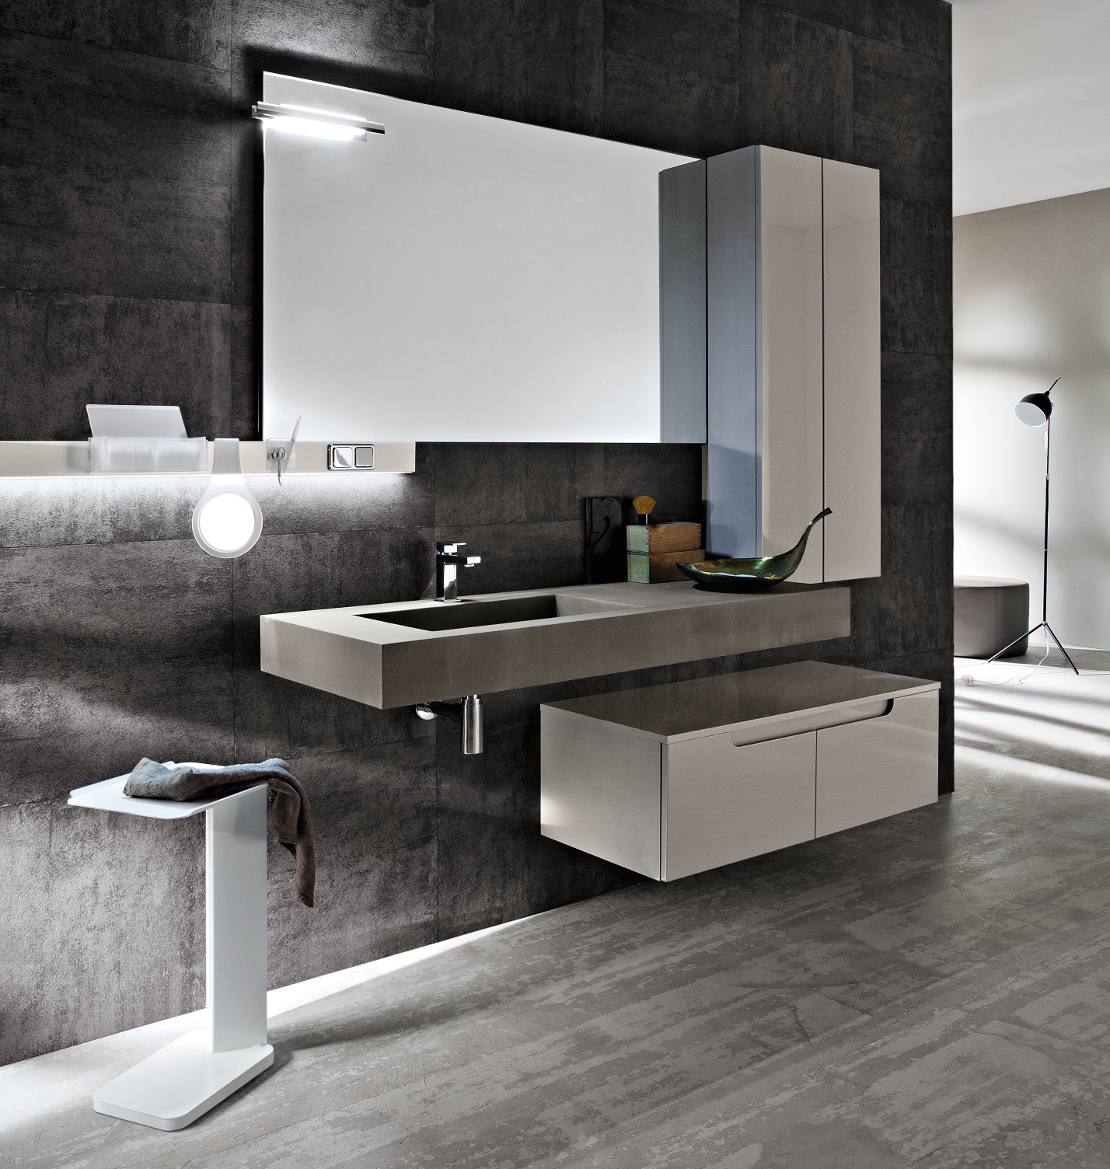 bagno moderno design minimal con vasca integrata in ecomalta colore fango